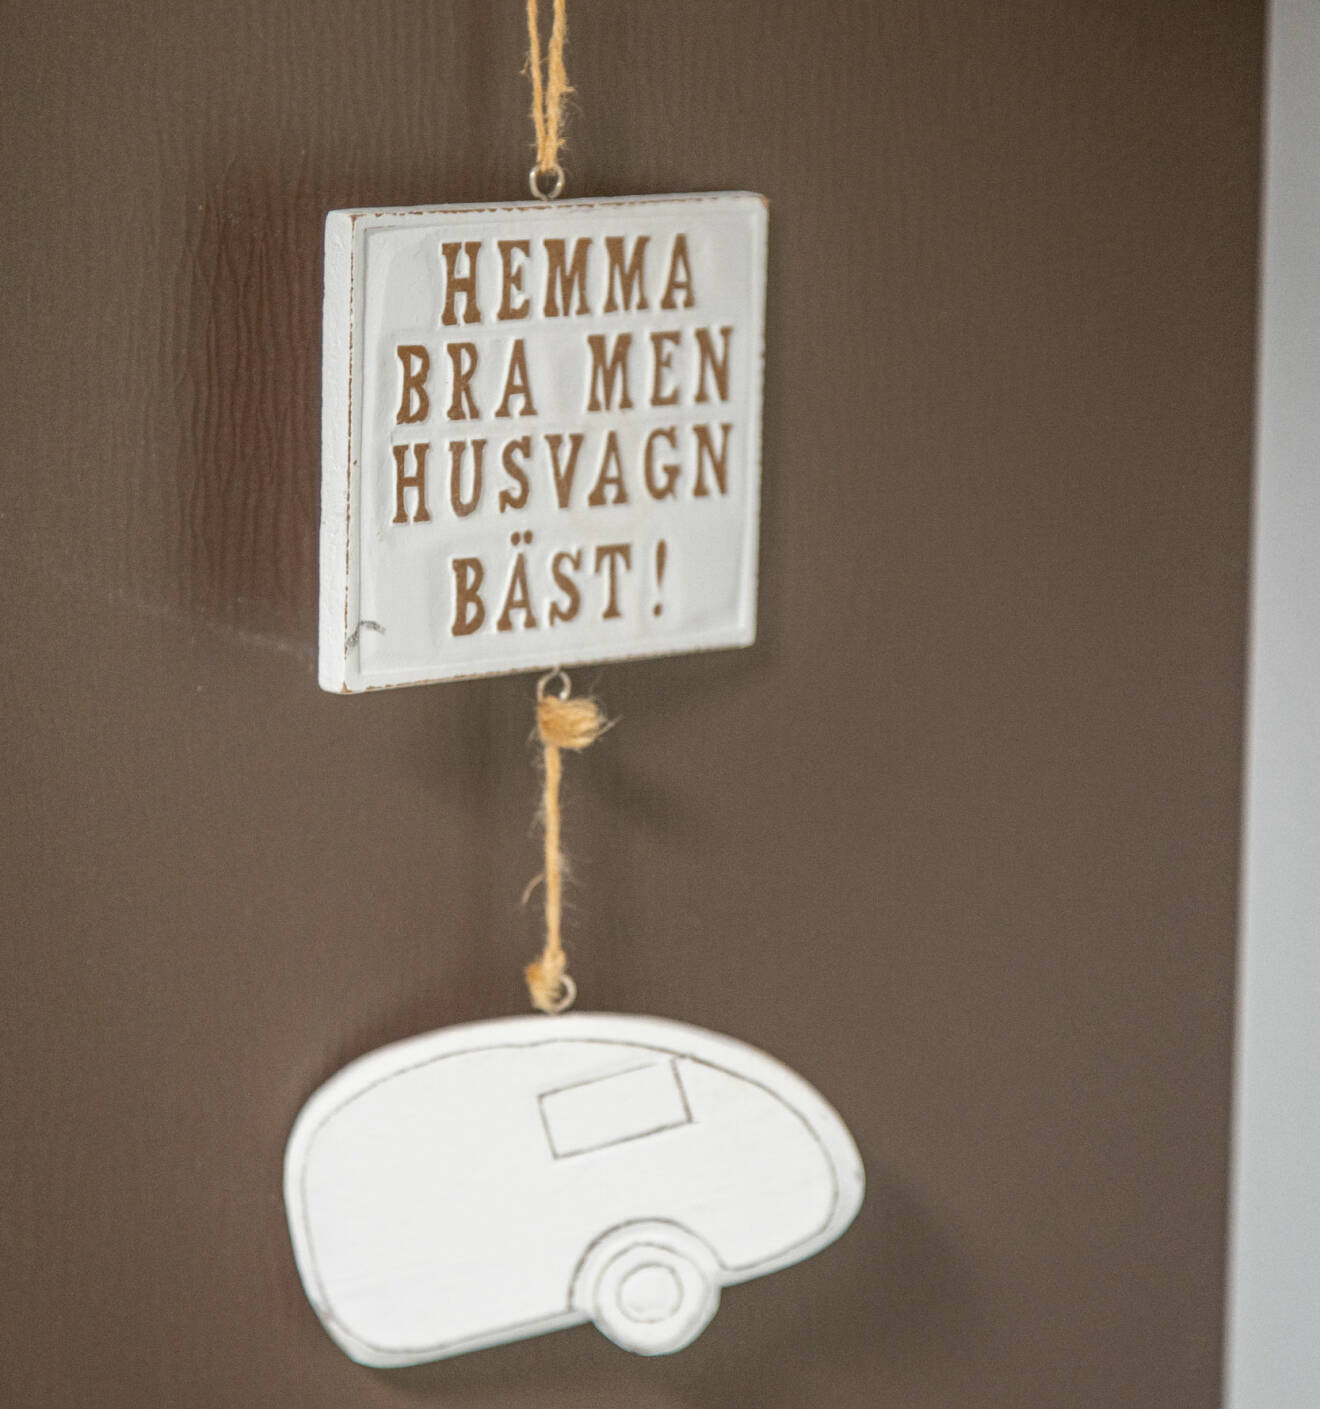 En skylt med texten "Hemma bra med husvagn bäst" hänger i Inger Axelssons husvagn.